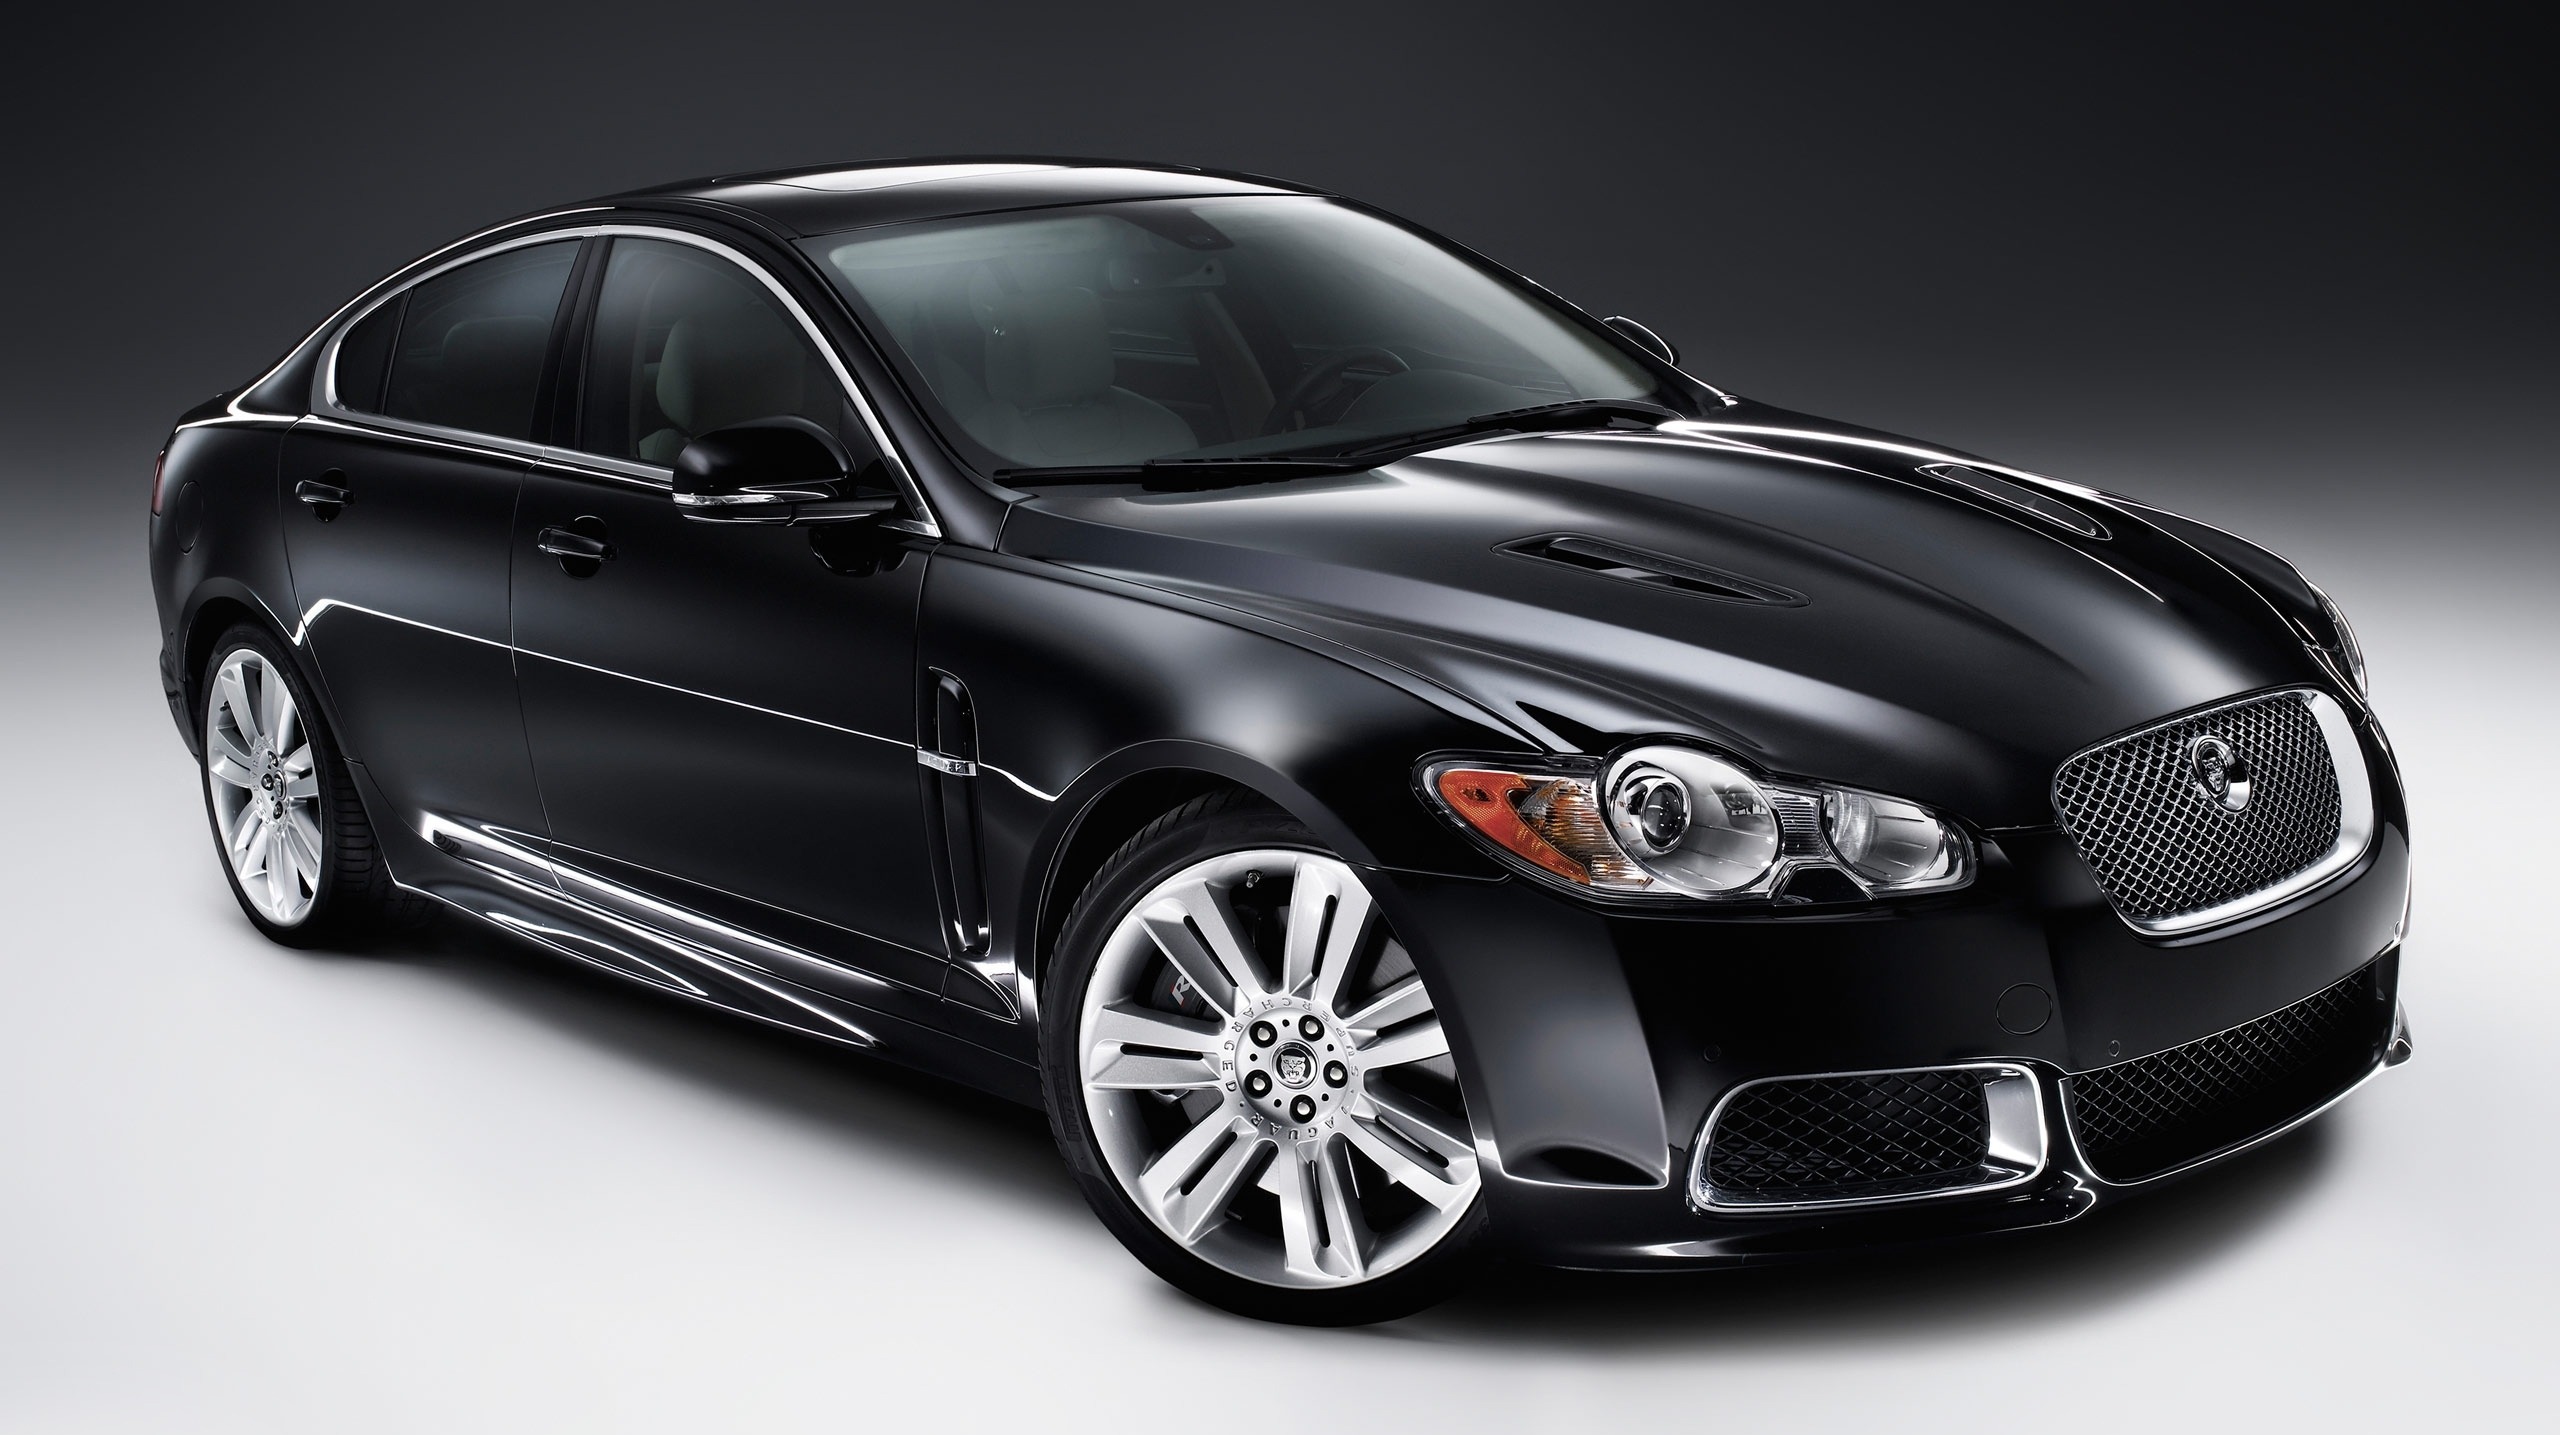 Best Buy Jaguar Car - Jaguar Xfr 2010 , HD Wallpaper & Backgrounds